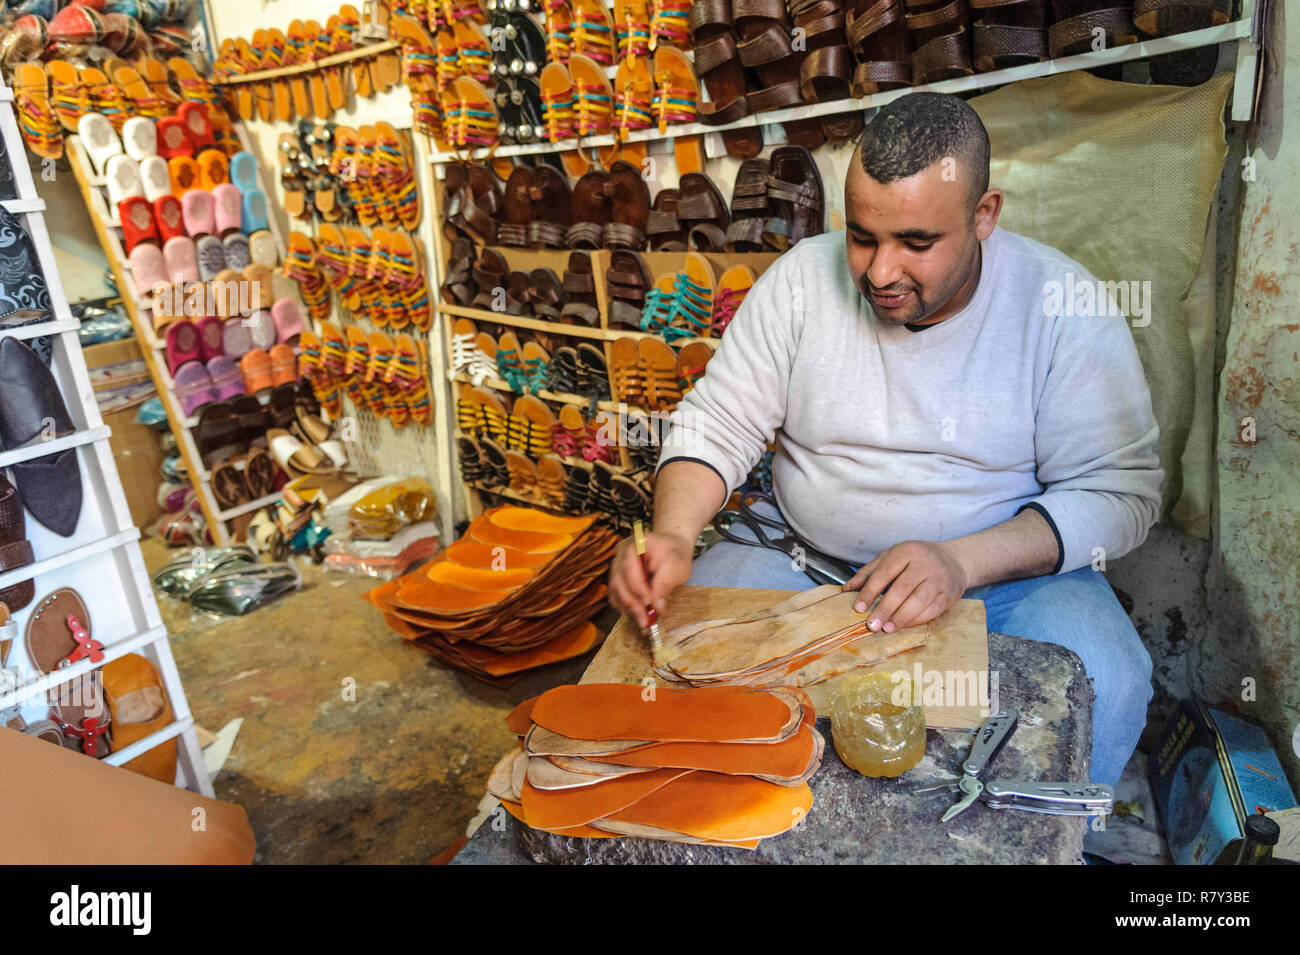 05-03-15, Marrakech, Marocco. Sandalo maker a lavorare con colla e cuoio nei souk della medina. Foto: © Simon Grosset Foto Stock